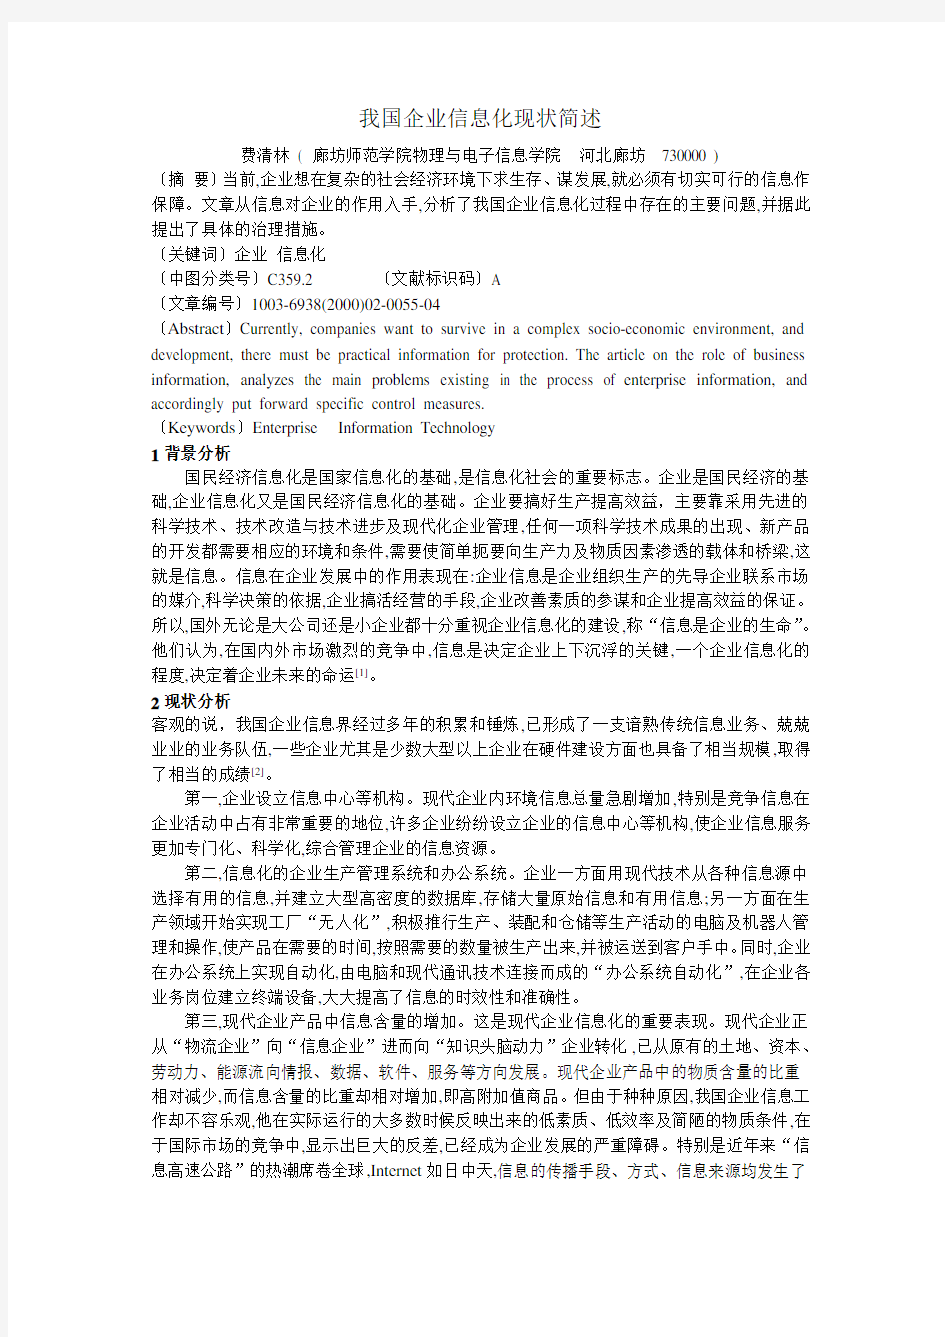 我国企业信息化现状简述-2013.12.21